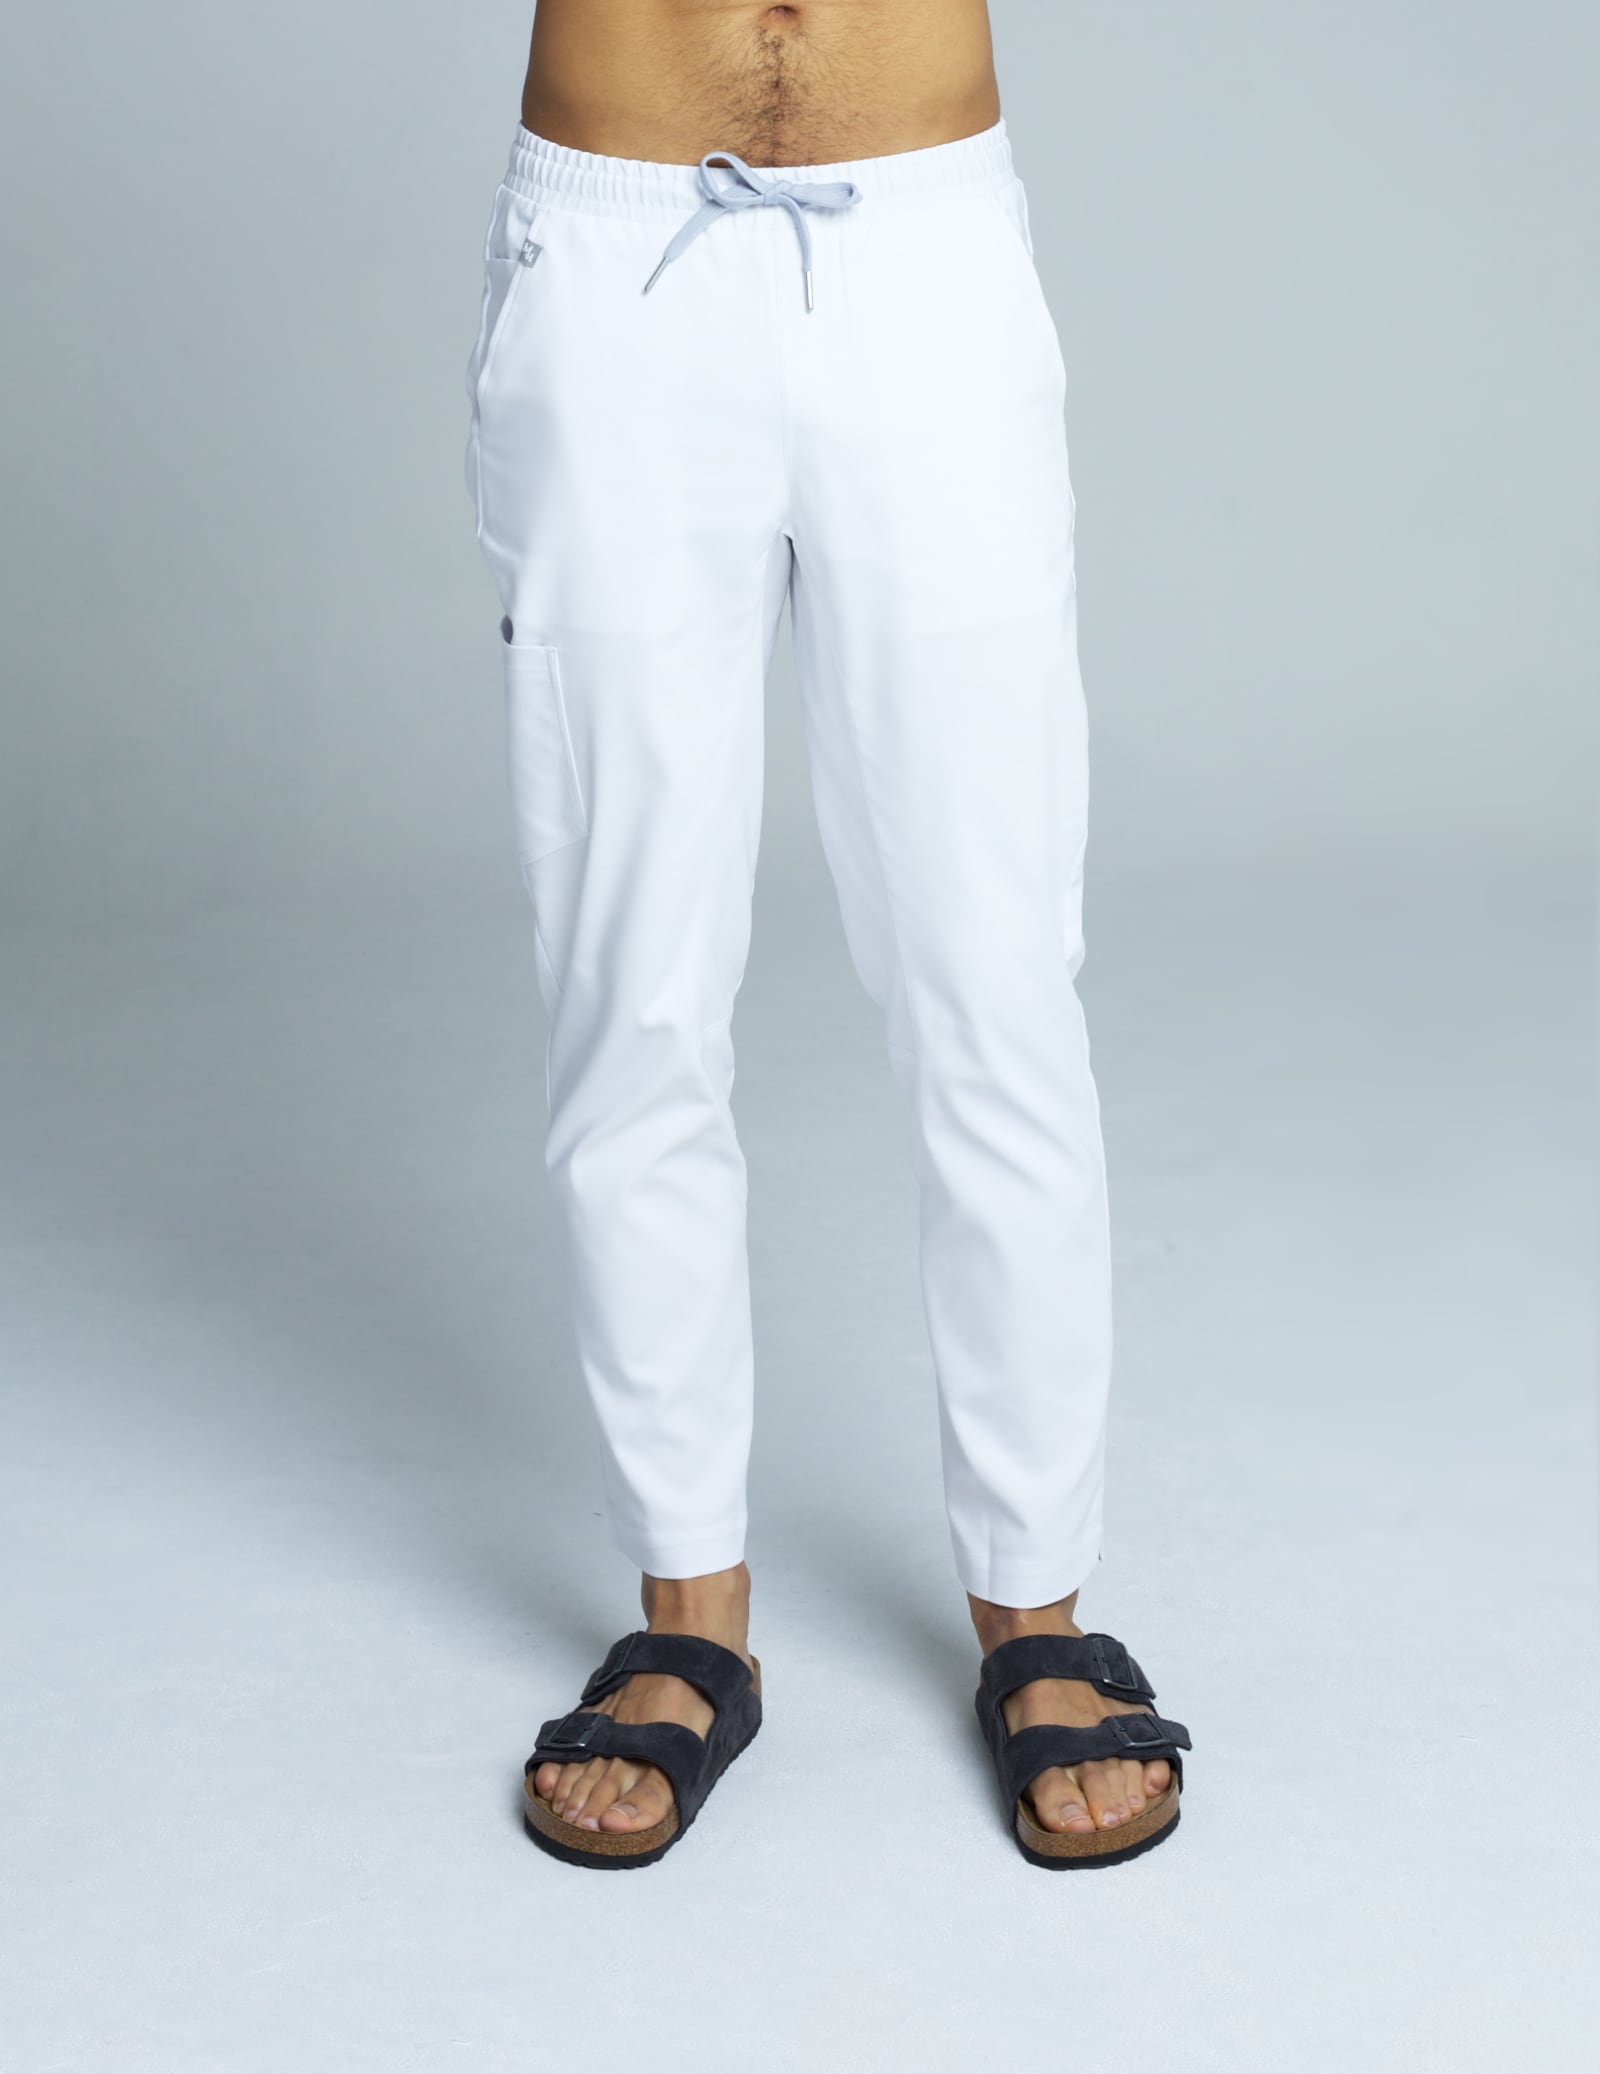 Men's Basic Pants - White